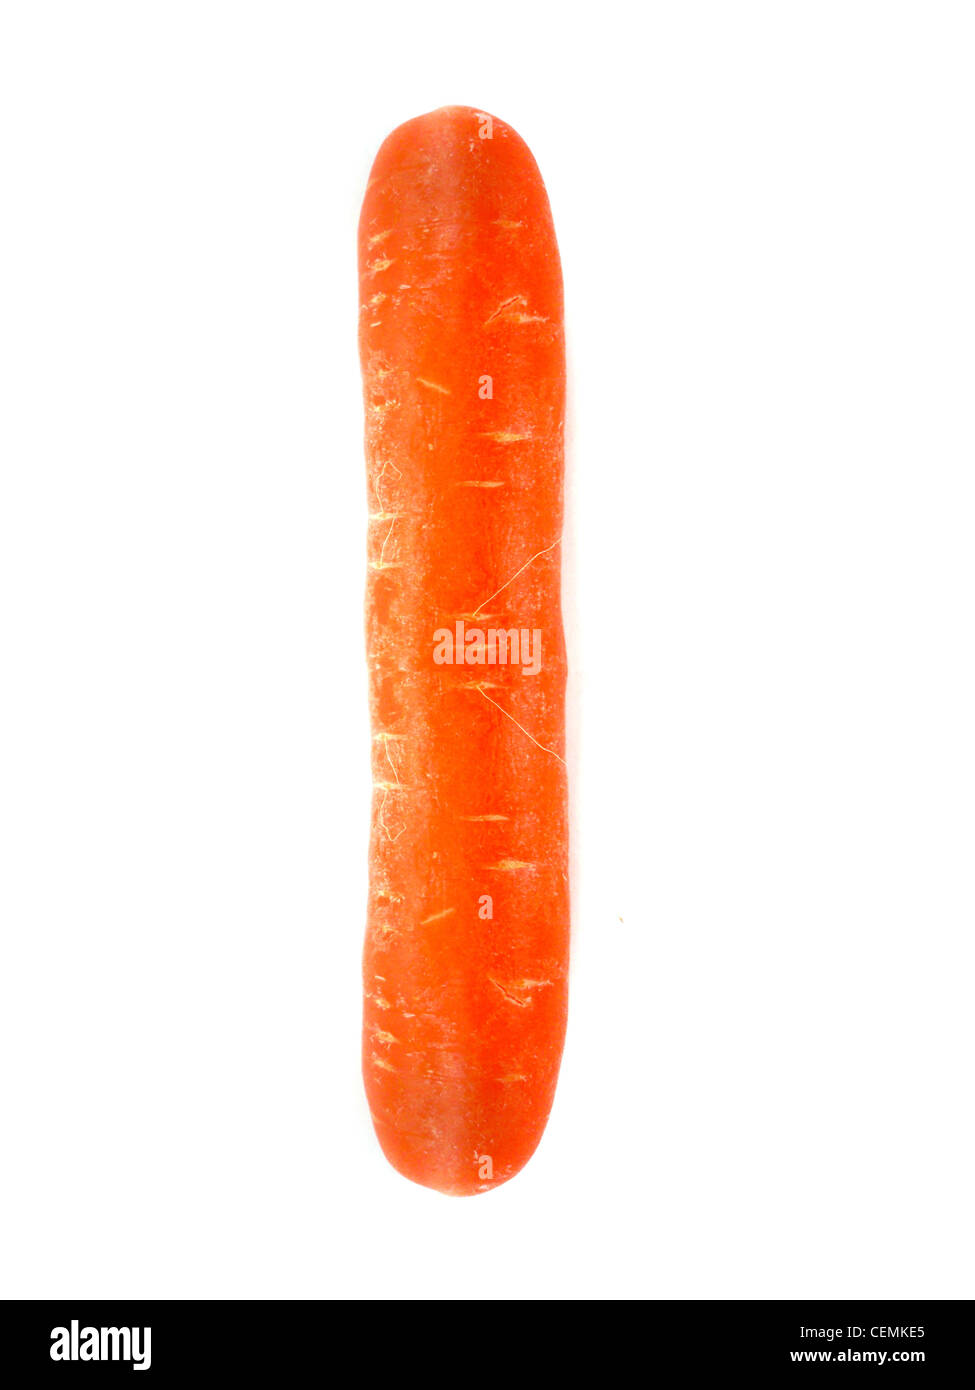 La carotte orange isolé sur fond blanc Banque D'Images